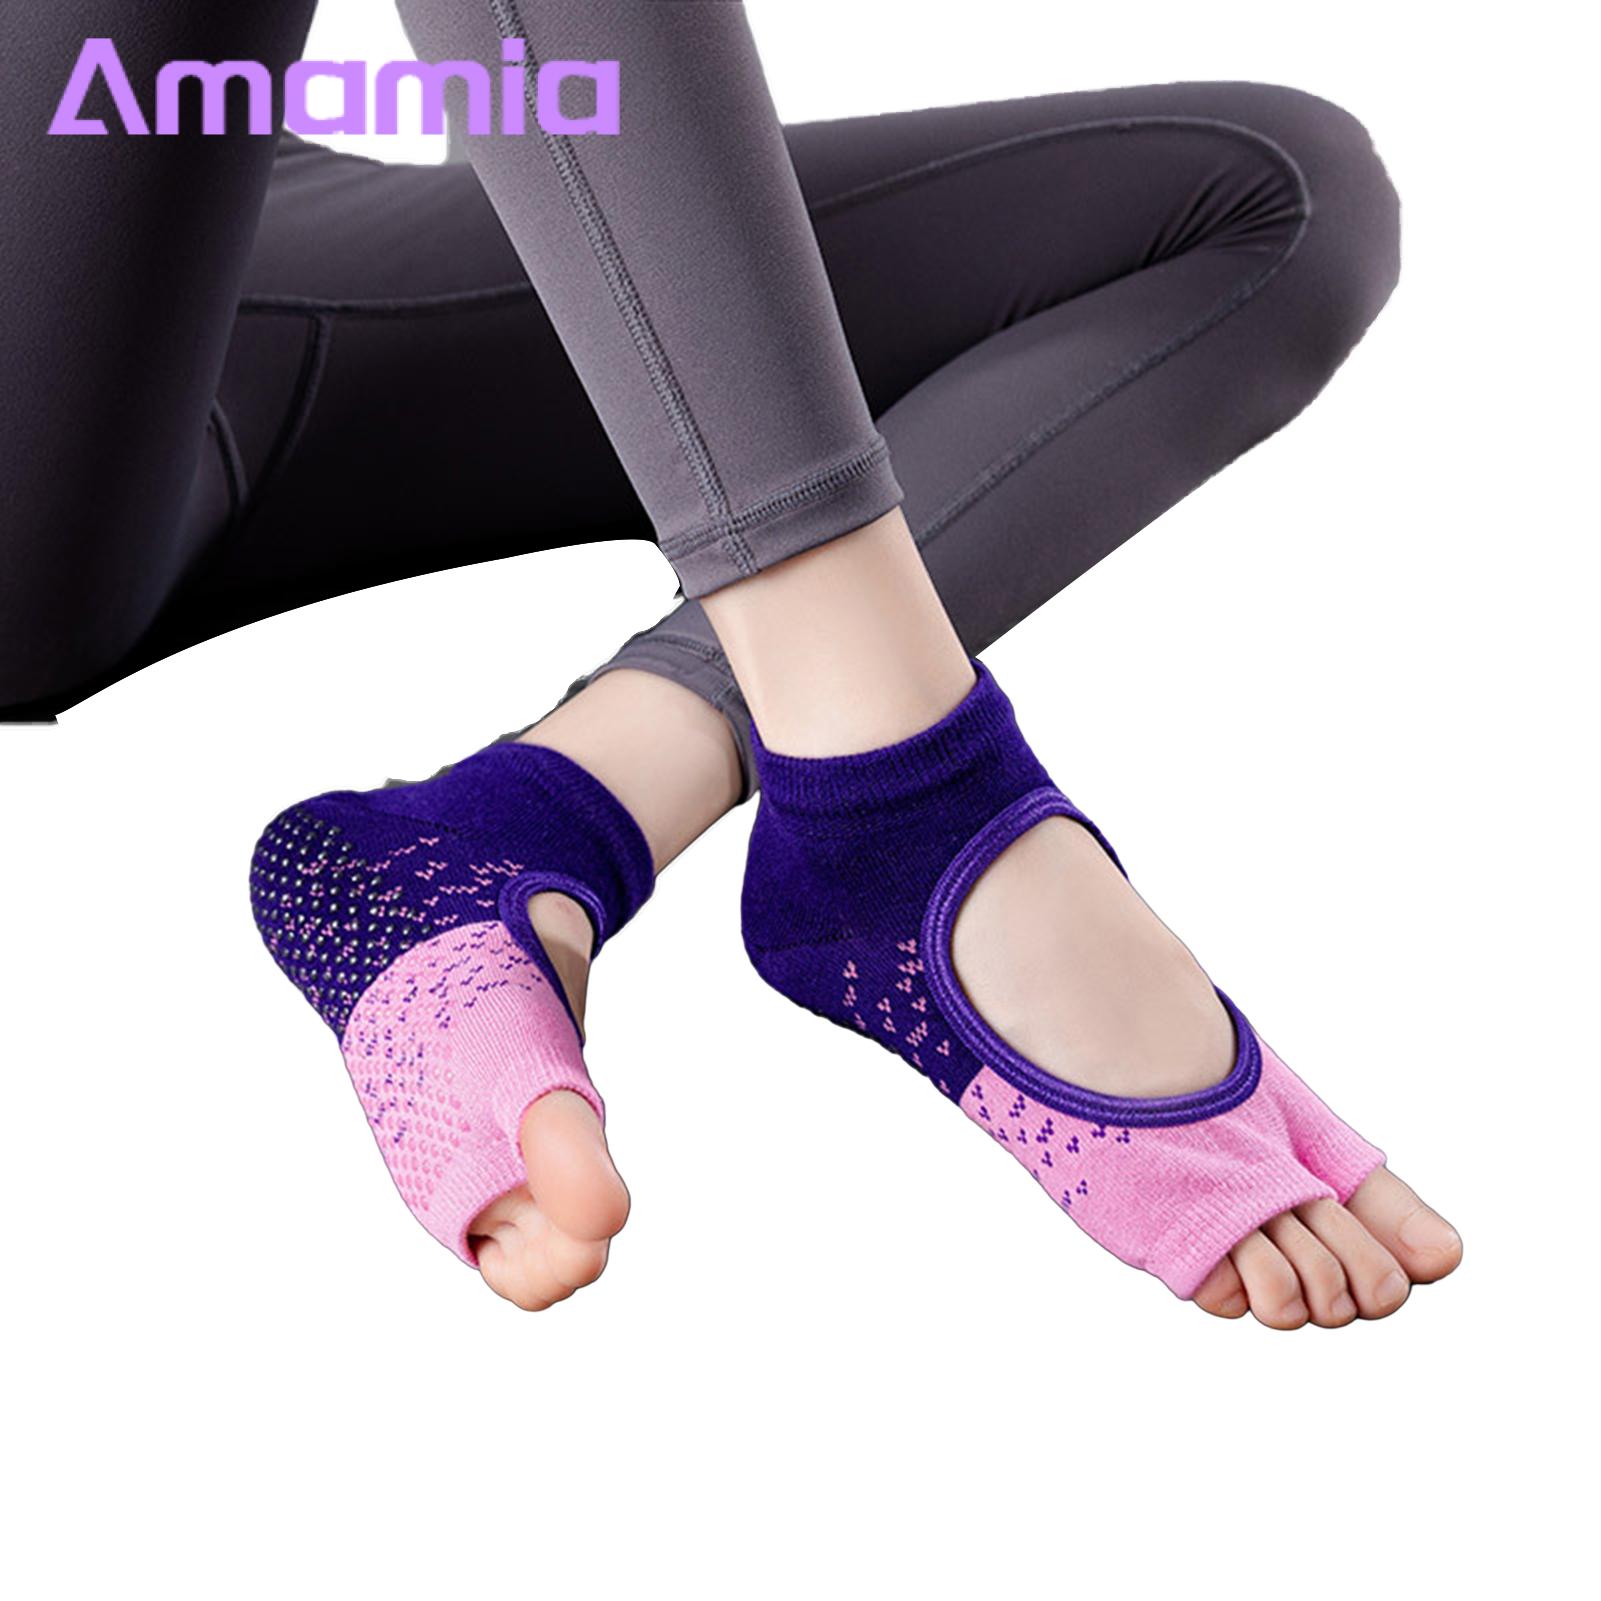 Women Socks Non-slip Yoga Socks for Women Soft Breathable Durable Toeless  Pilates Socks with Grips Perfect for Barre Fitness Home Workouts Elastic  Socks